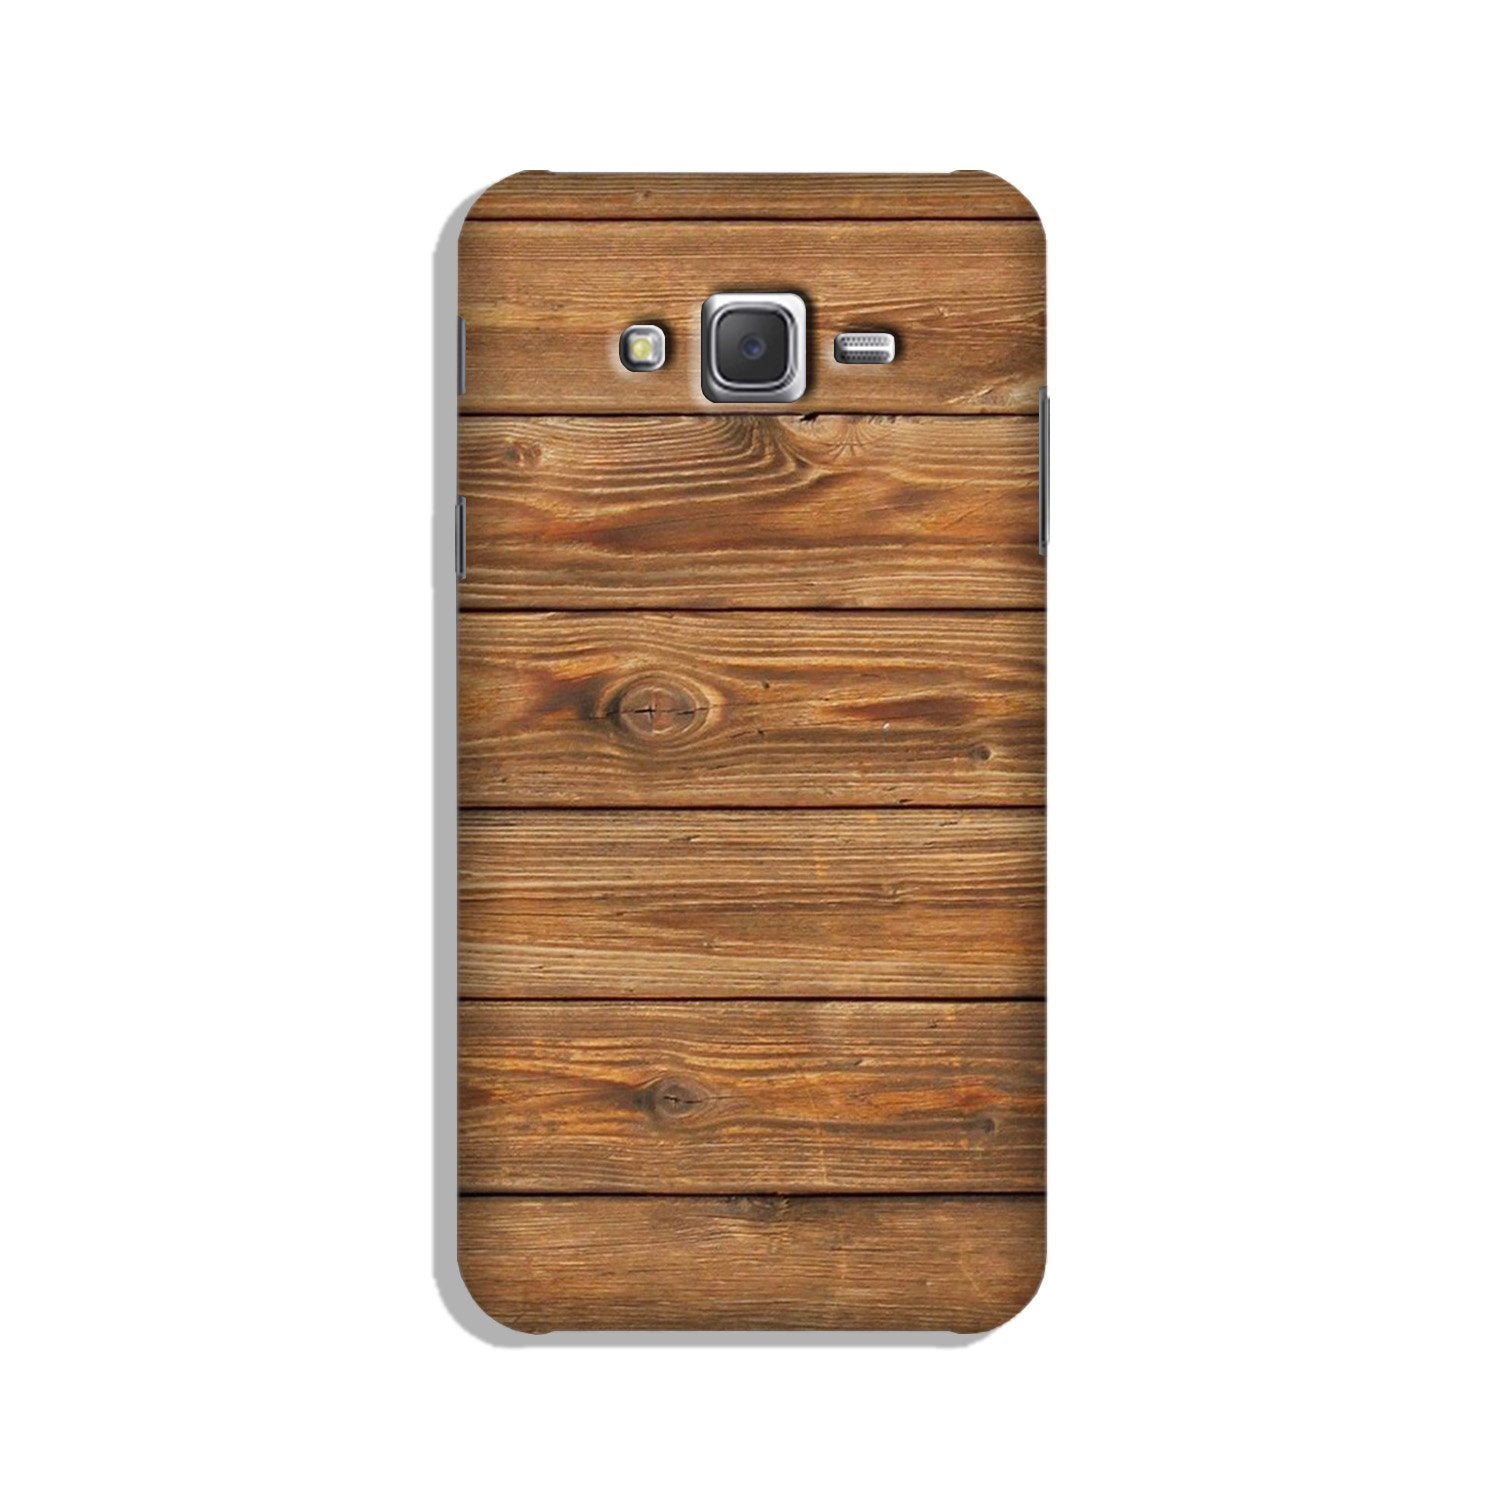 Wooden Look Case for Galaxy E7  (Design - 113)